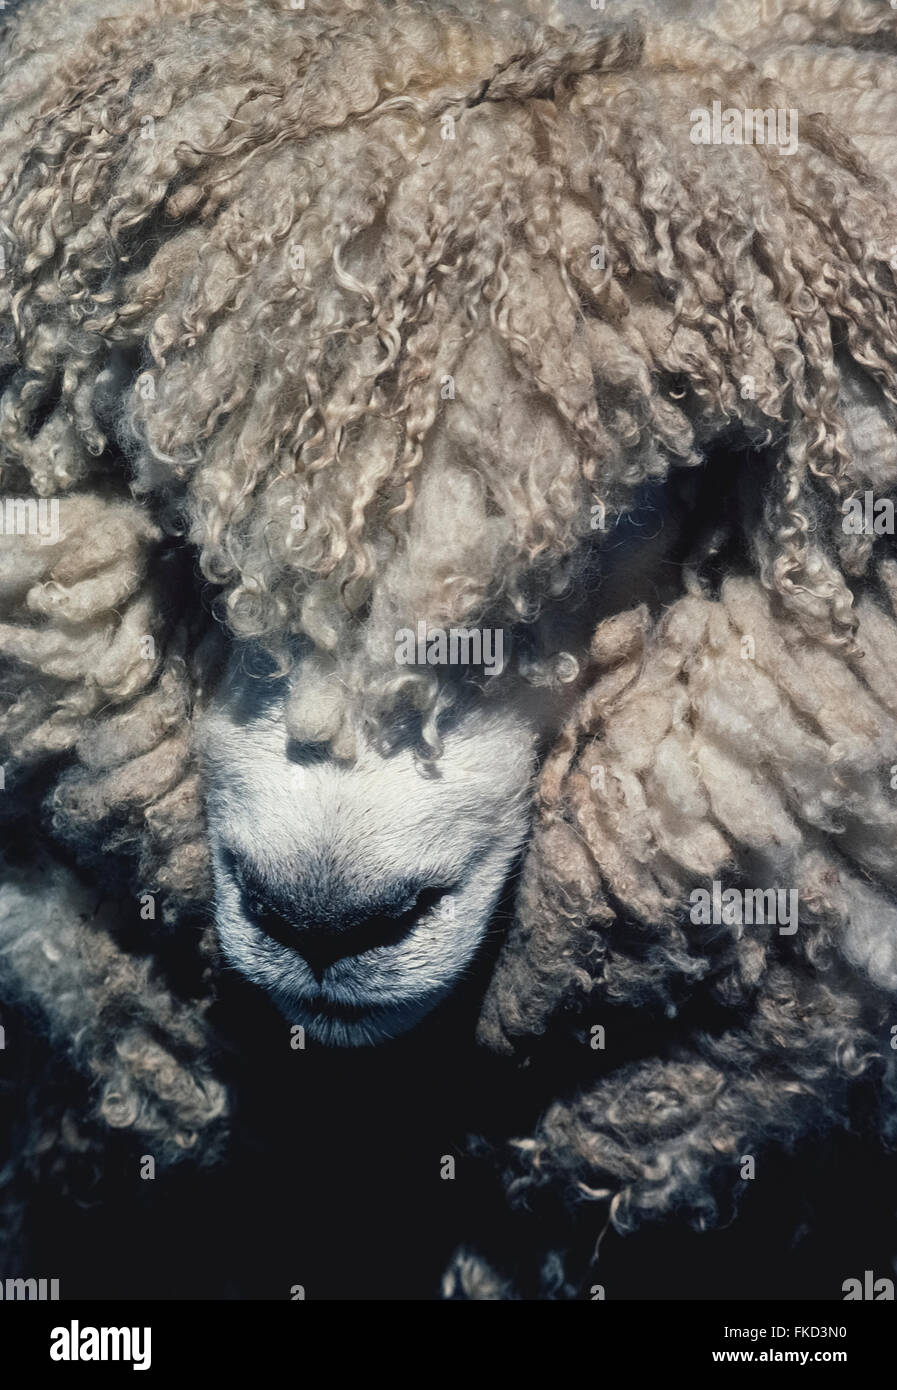 Das dicke wollige Fell dieser Schafe in Neuseeland verbirgt sich die meisten von seinem Gesicht. New Zealand Schafpopulation auf rund 30,002015 Millionen gesunken, aber dieser Nation ikonischen Nutztier noch zahlenmäßig überlegen sein Volk sechs zu eins. Stockfoto